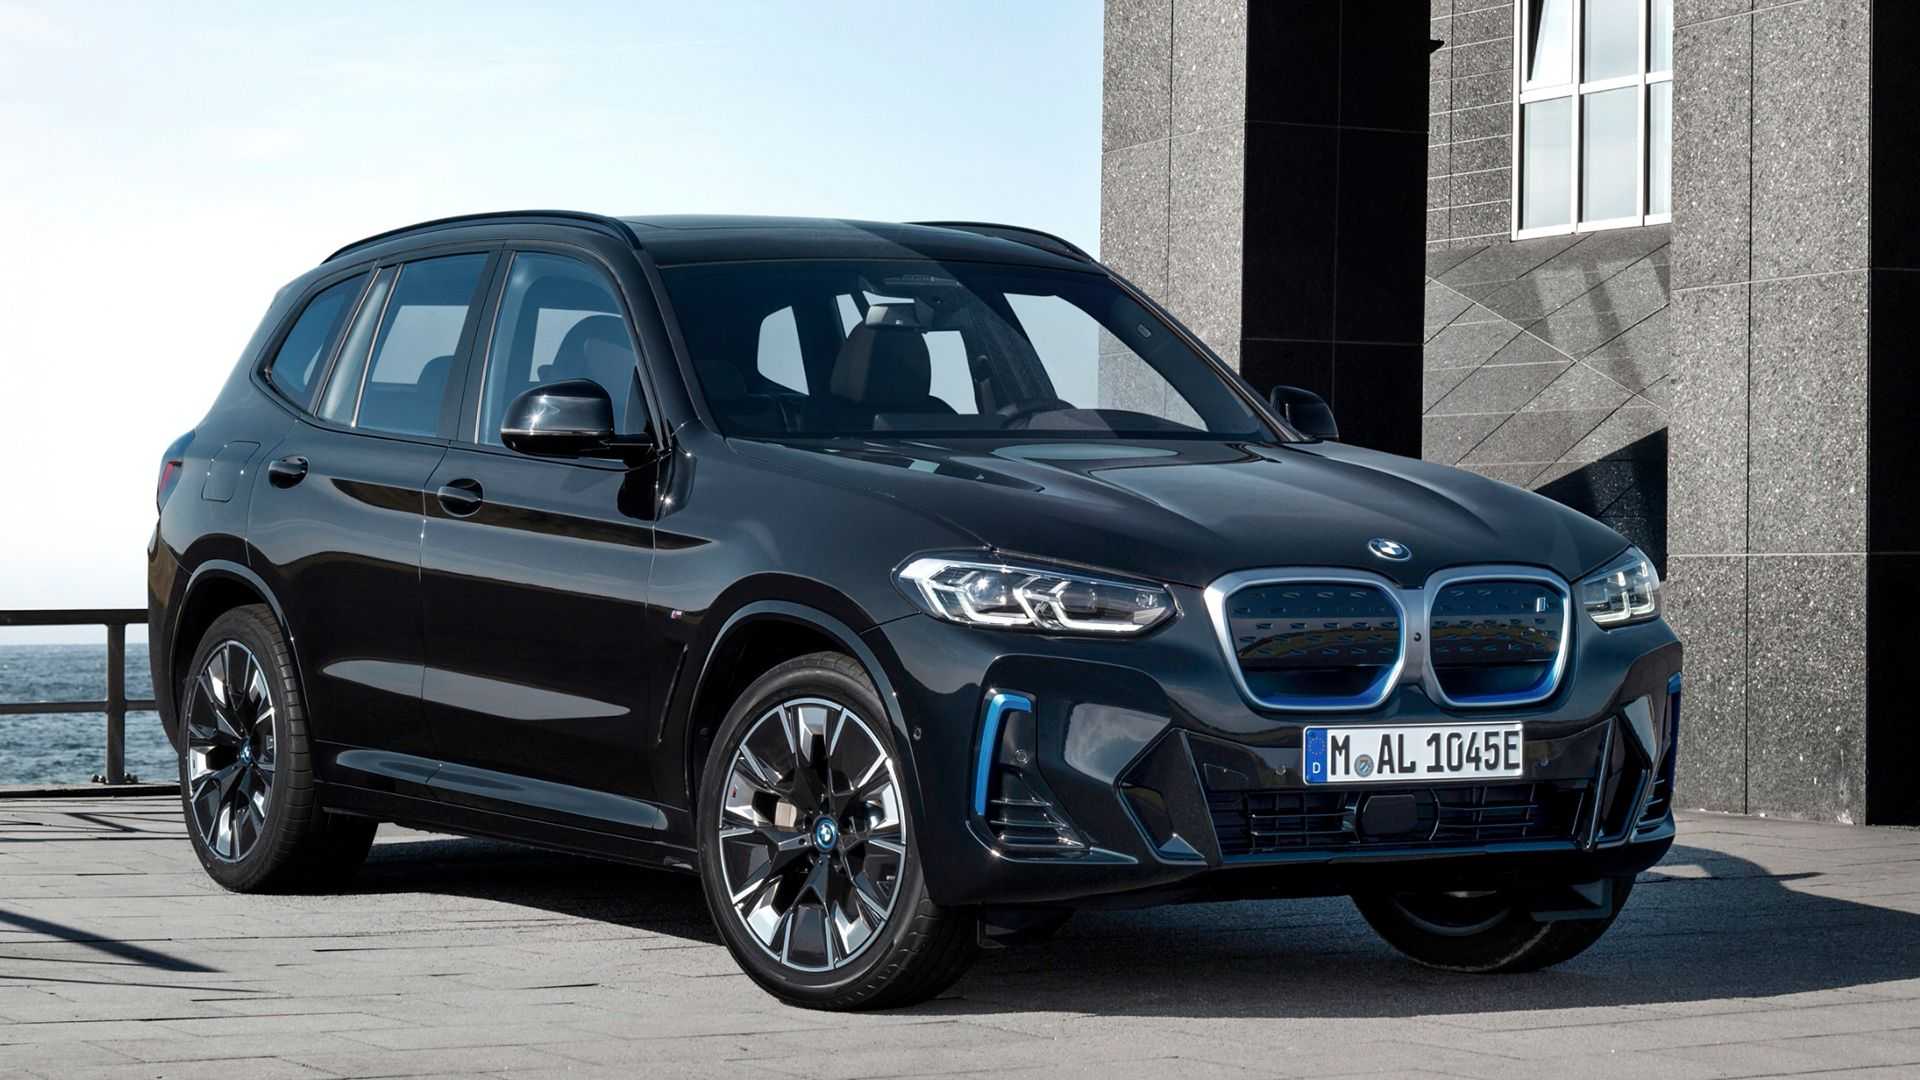 BMW из-за дефицита чипов начал продавать авто без некоторых систем